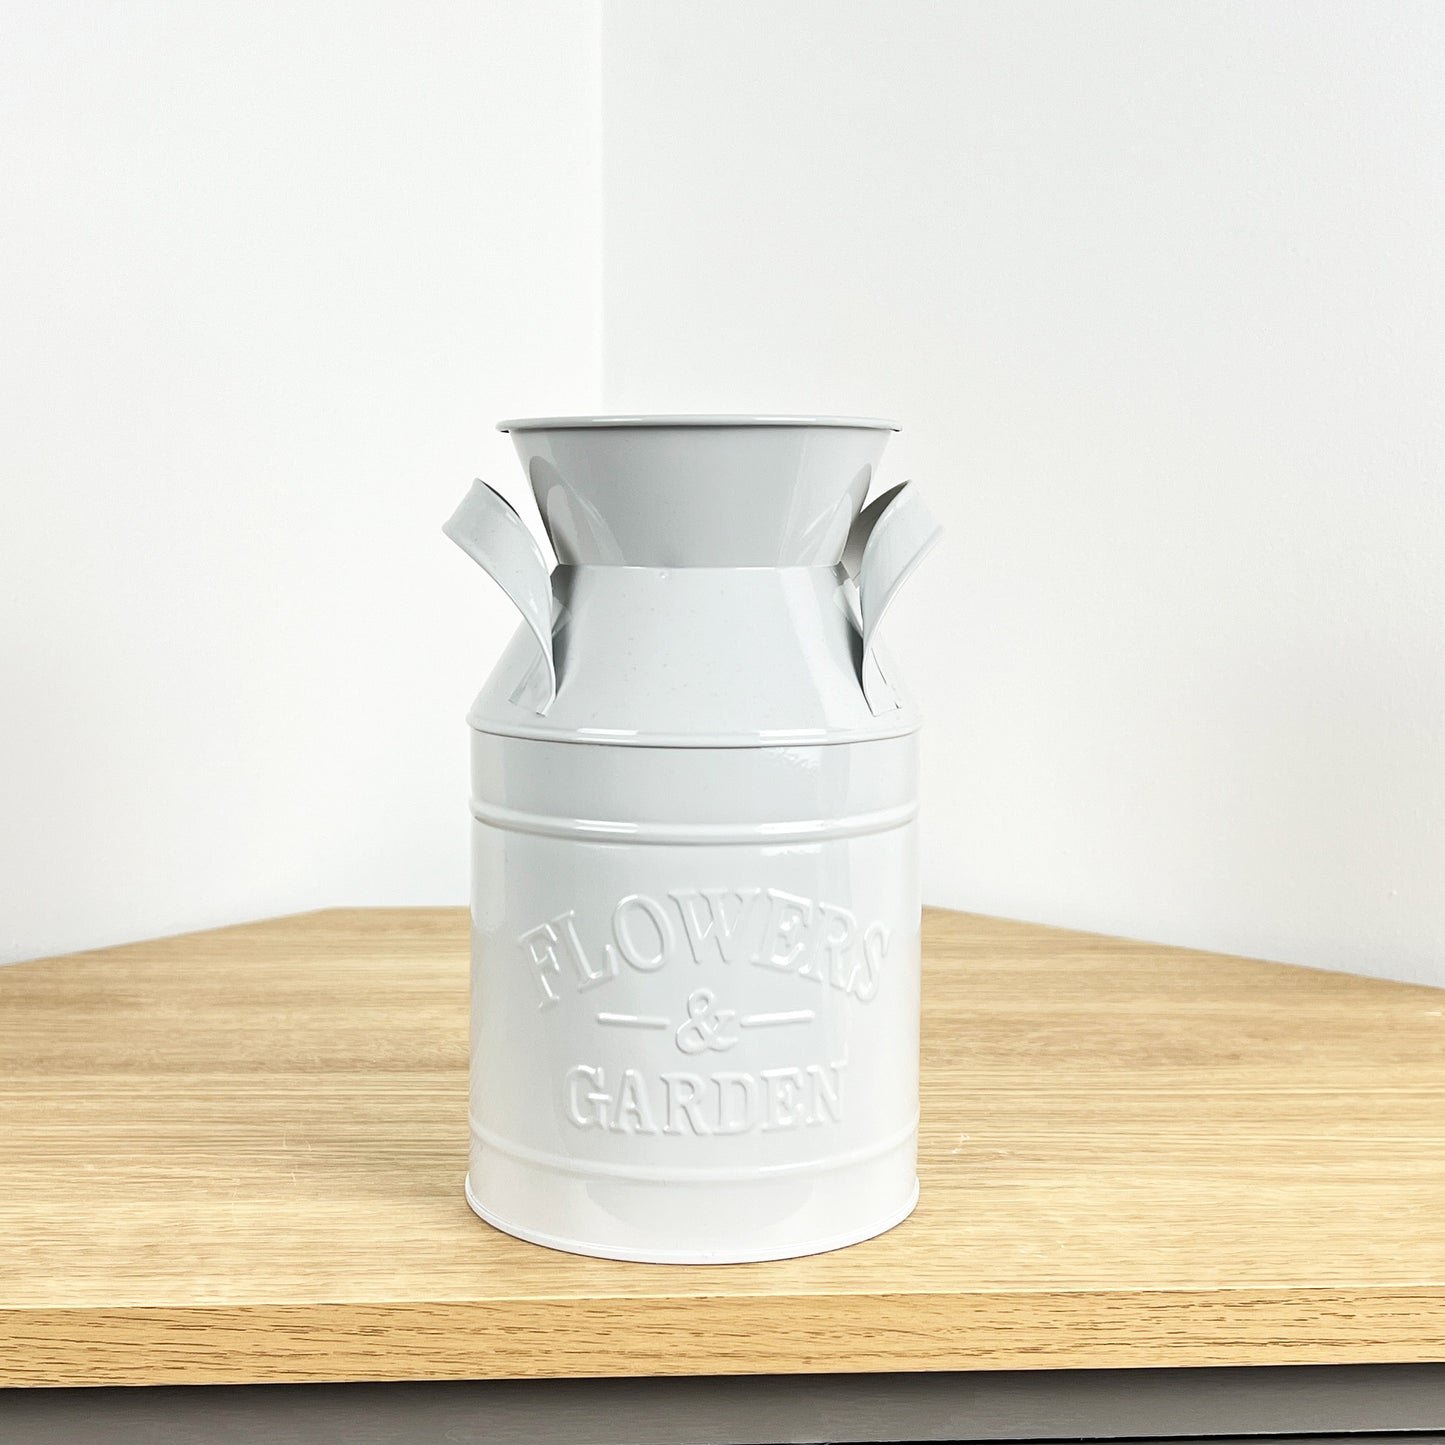 19cm Milk Churn Vase / Planter - Grey